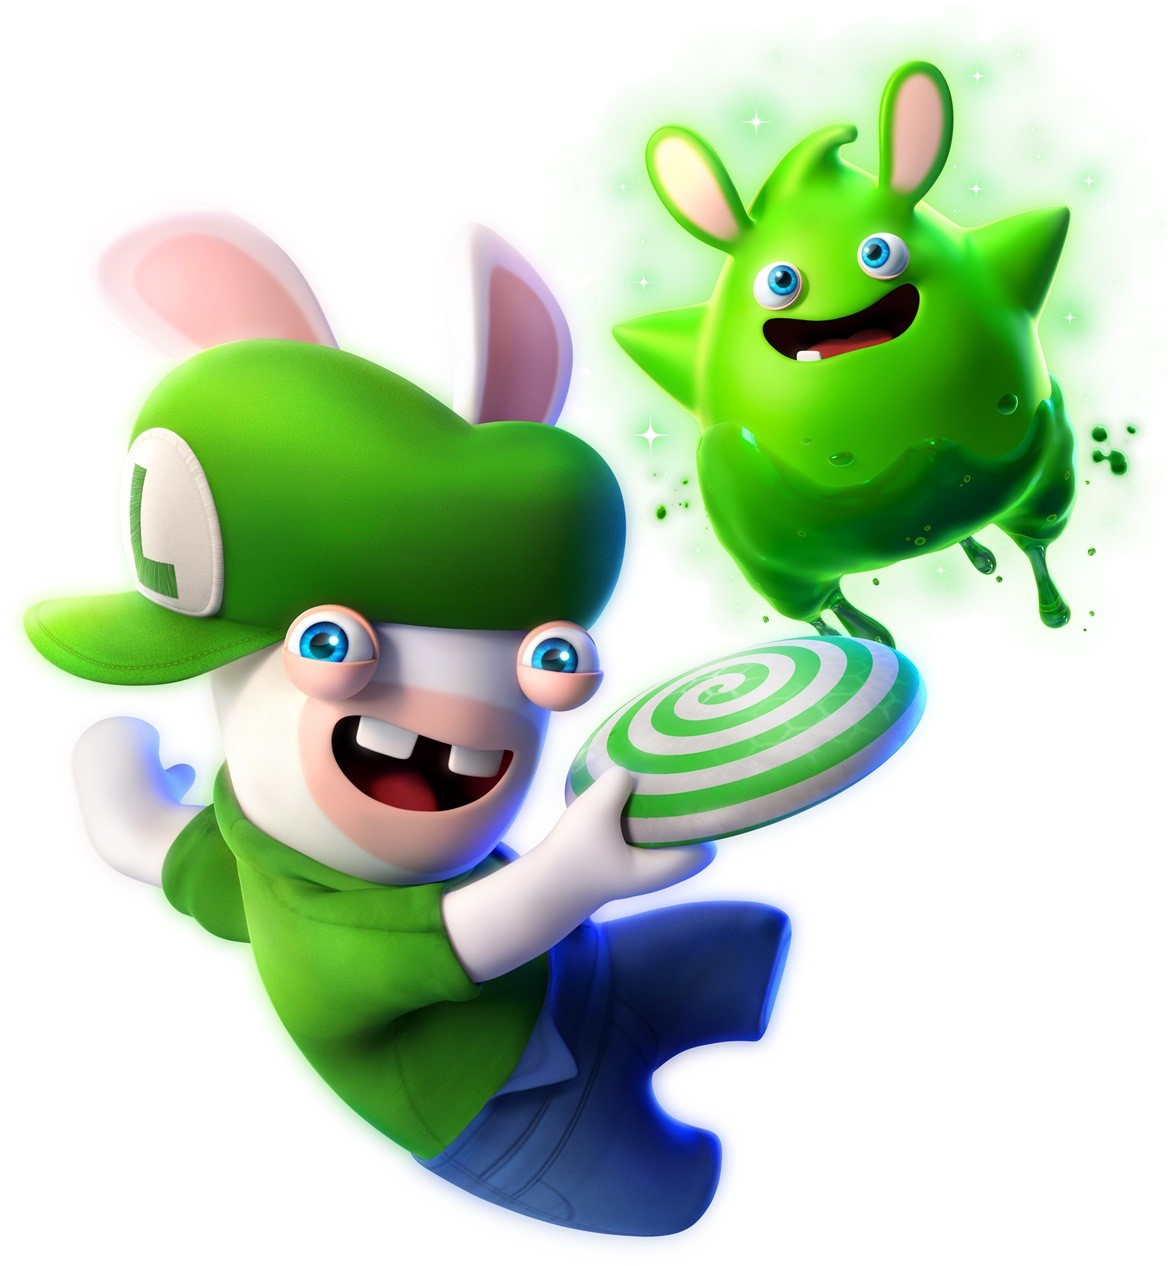 策略遊戲《瑪利歐+瘋狂兔子星耀之願》官方公佈藝術圖